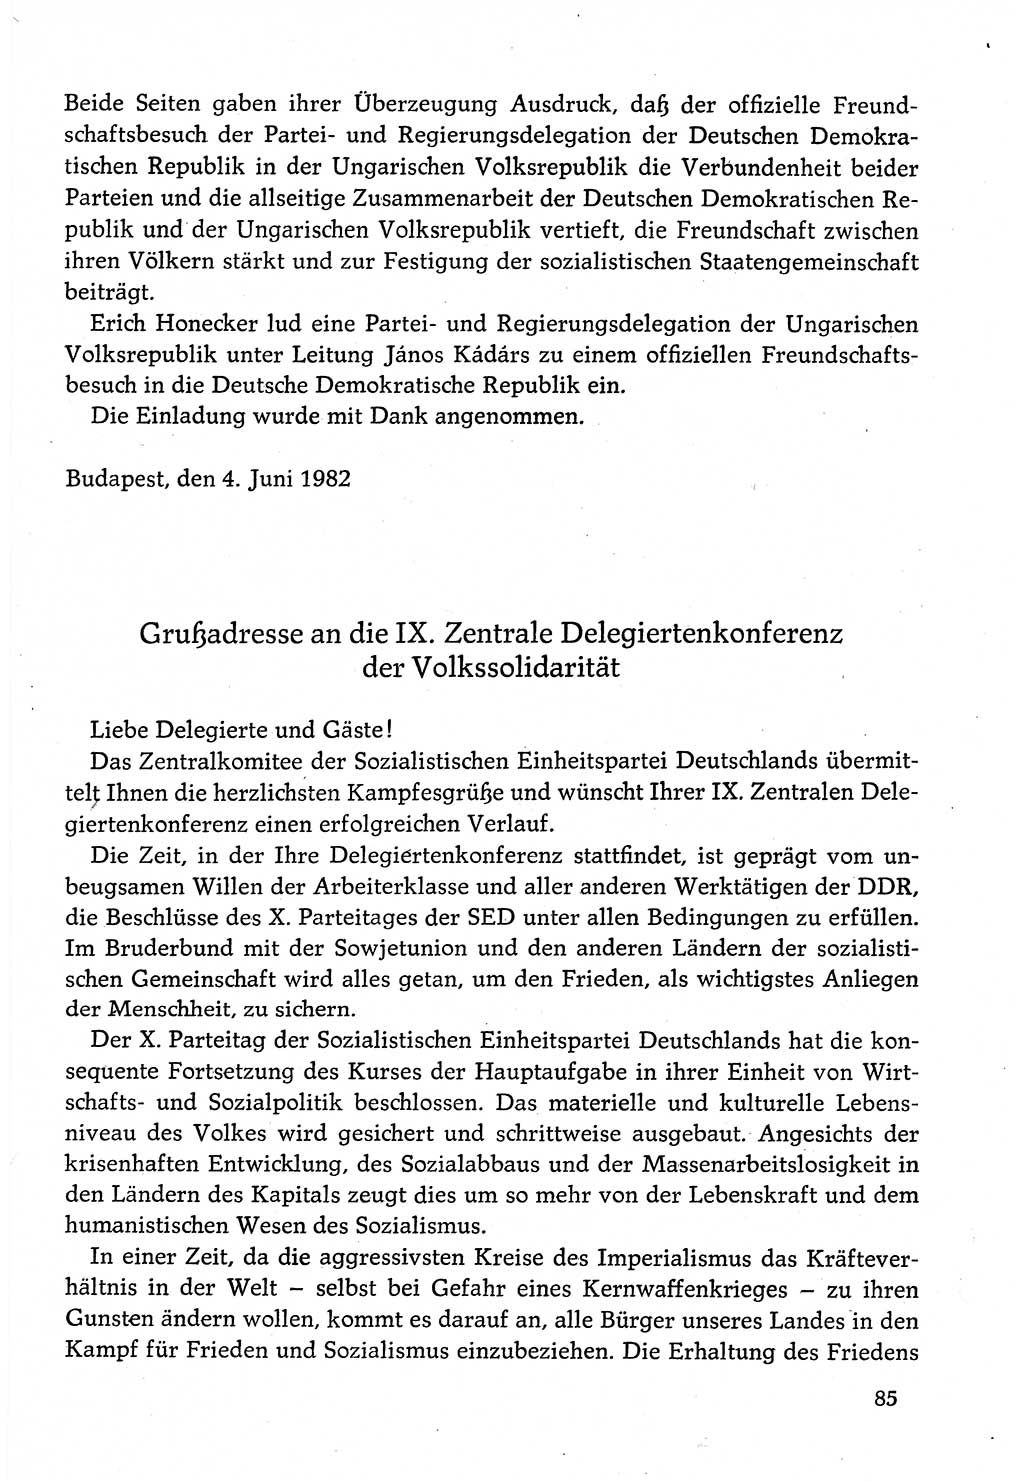 Dokumente der Sozialistischen Einheitspartei Deutschlands (SED) [Deutsche Demokratische Republik (DDR)] 1982-1983, Seite 85 (Dok. SED DDR 1982-1983, S. 85)